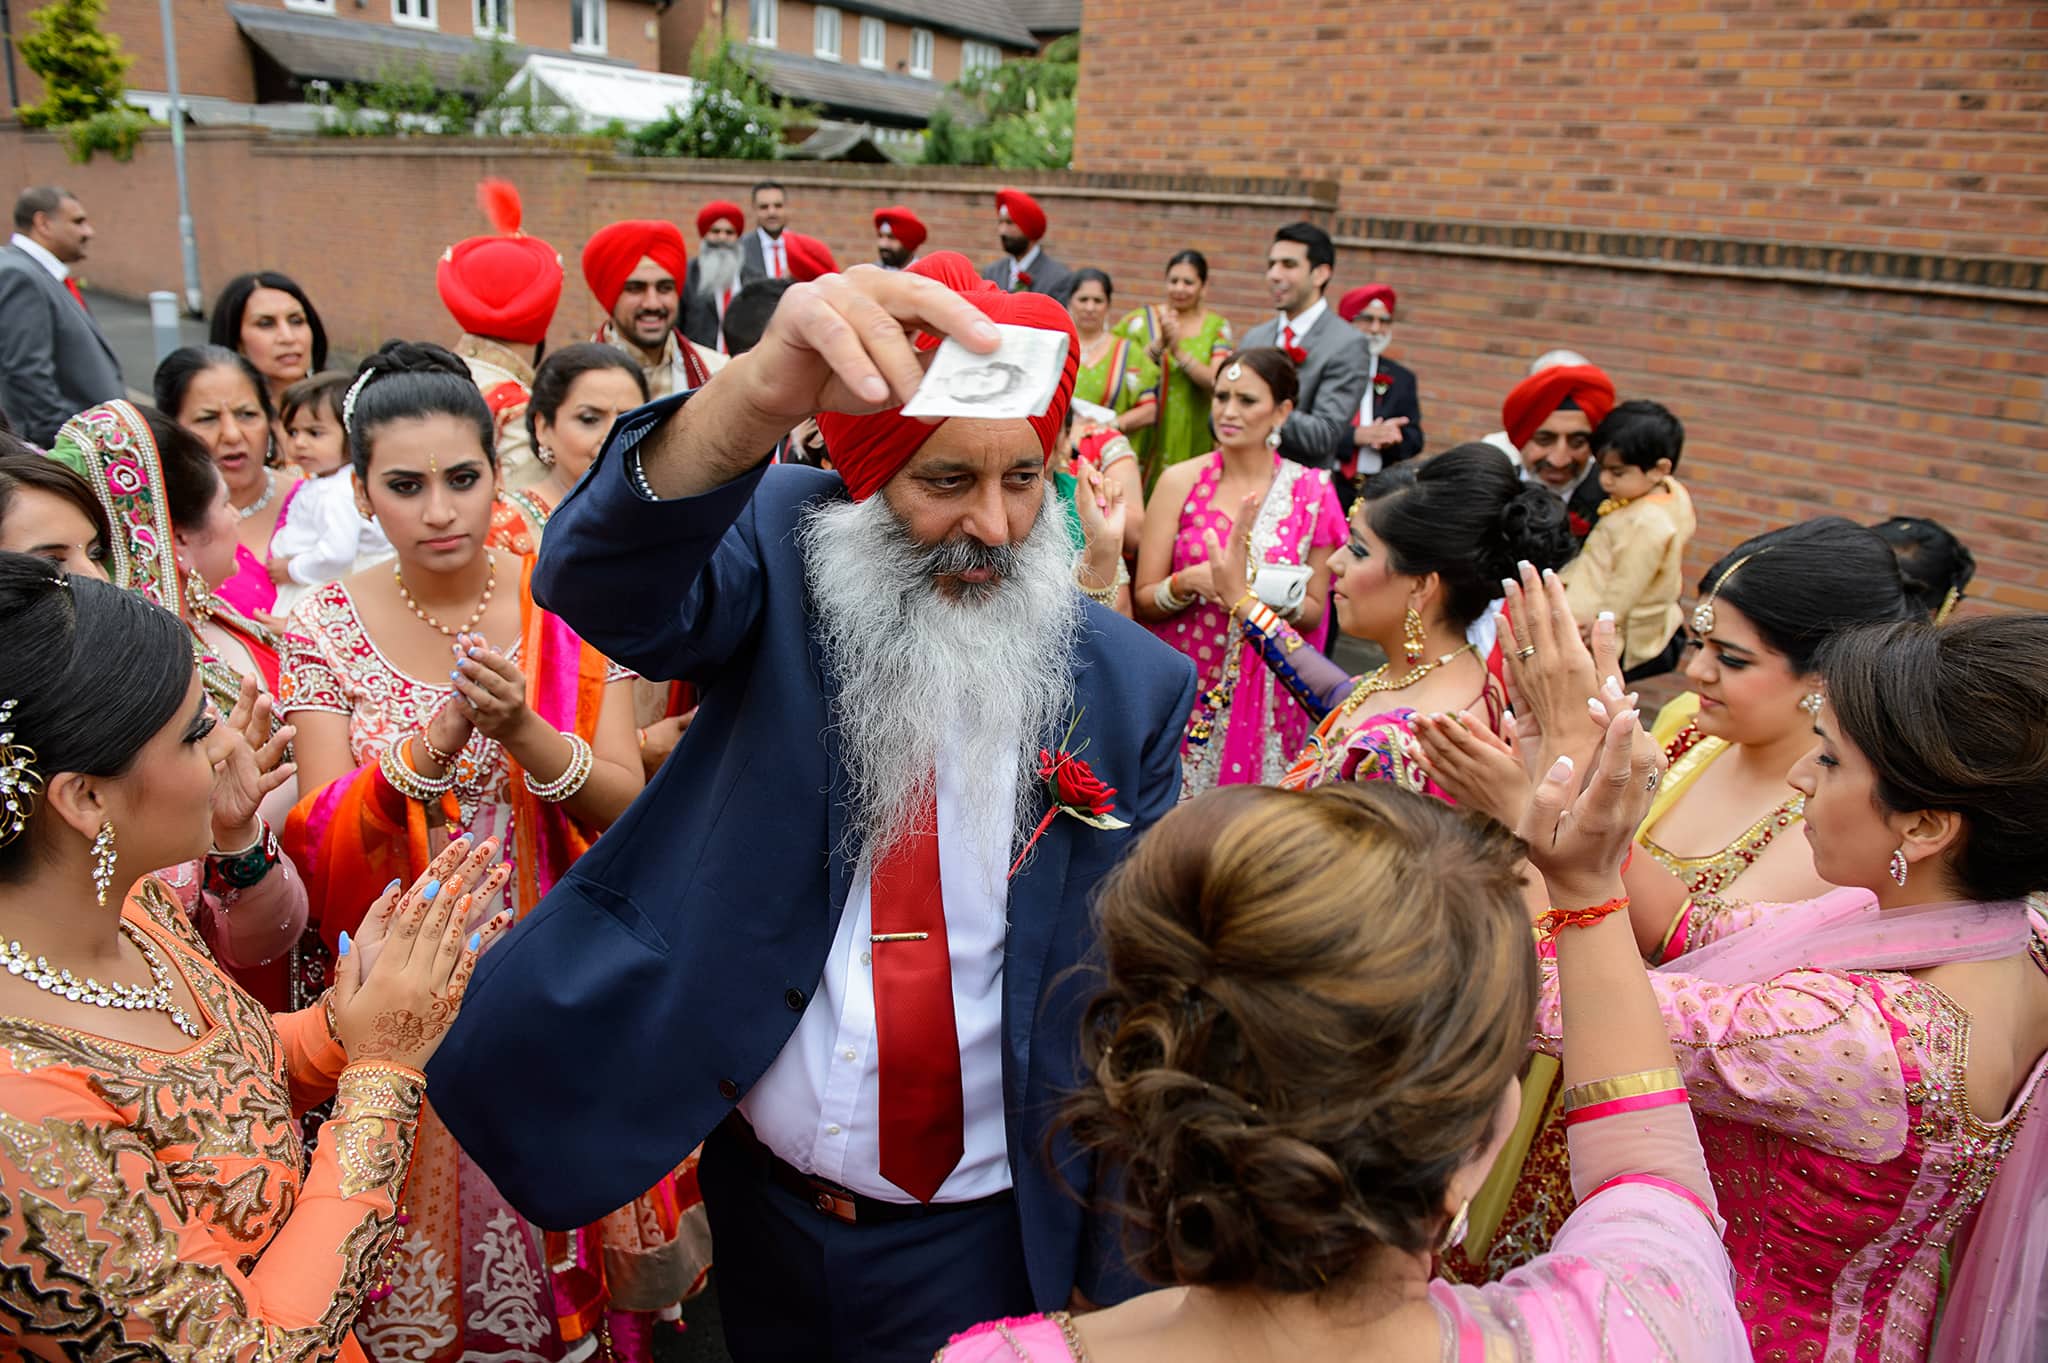 Sikh wedding photography